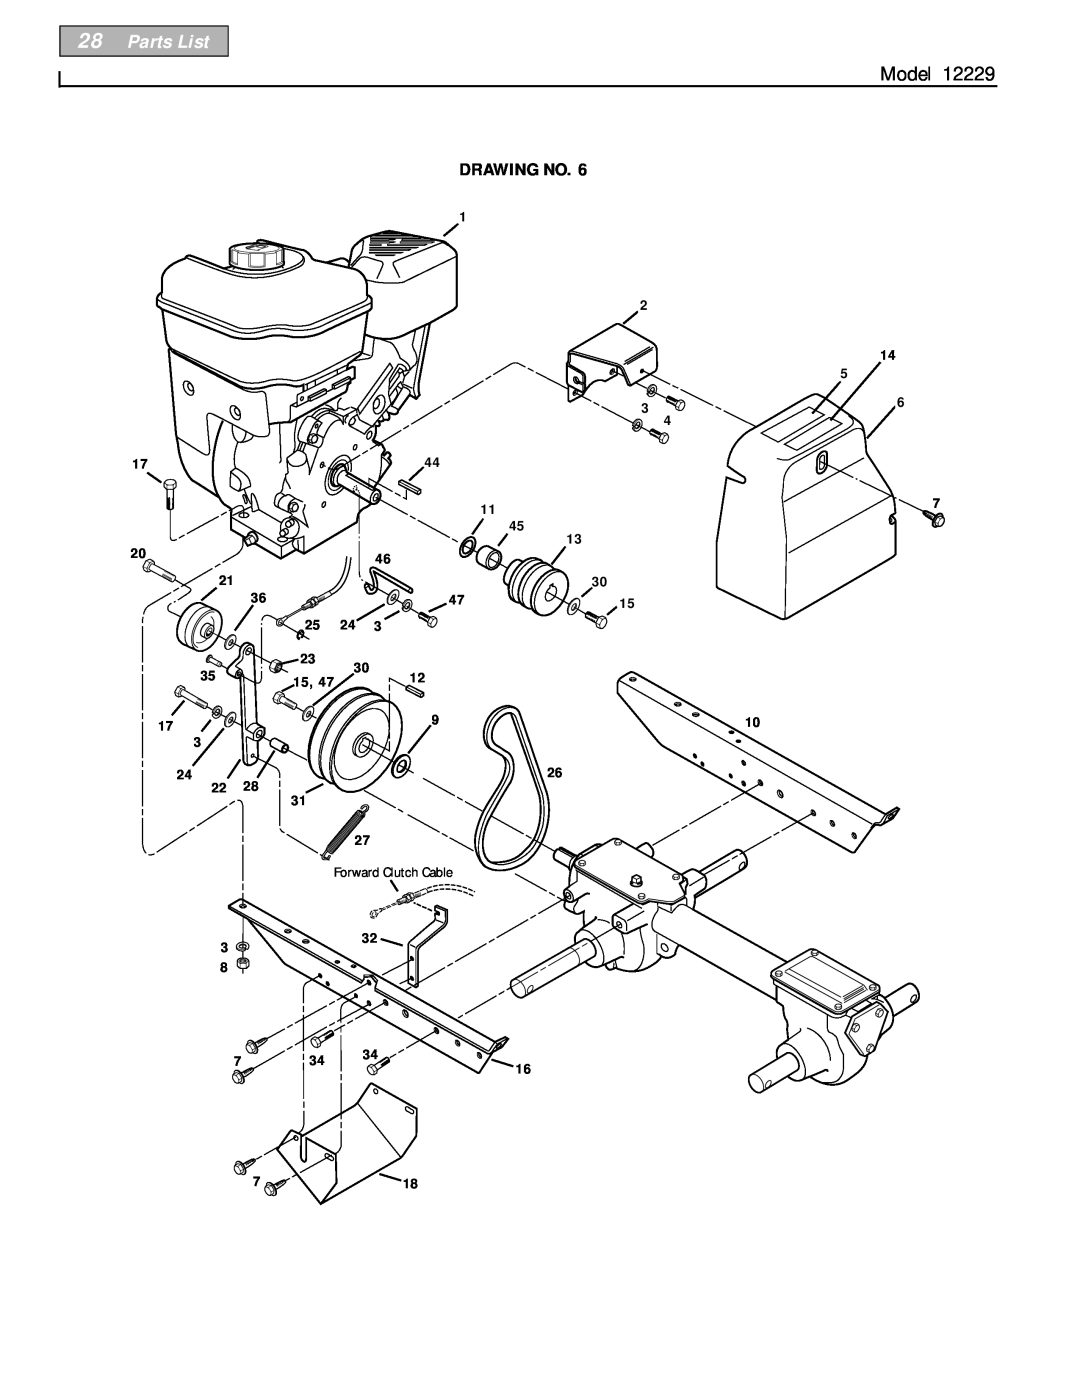 Bolens 12229 owner manual Parts List, Model, Drawing No, Forward Clutch Cable 